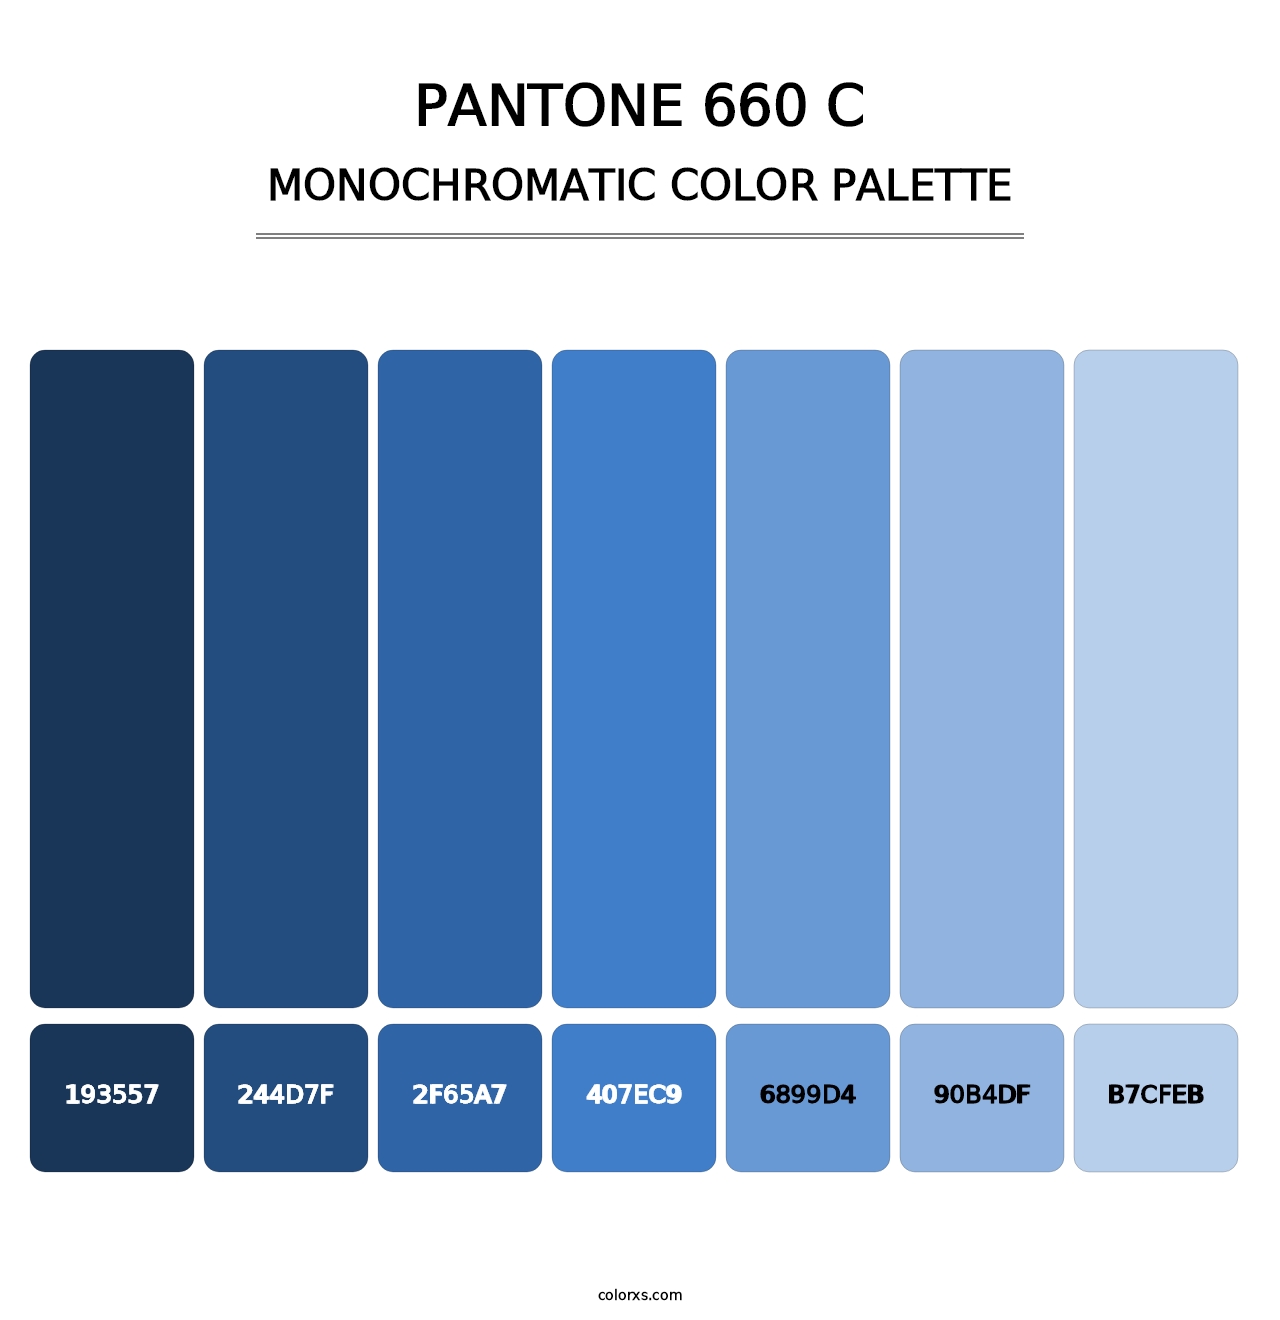 PANTONE 660 C - Monochromatic Color Palette